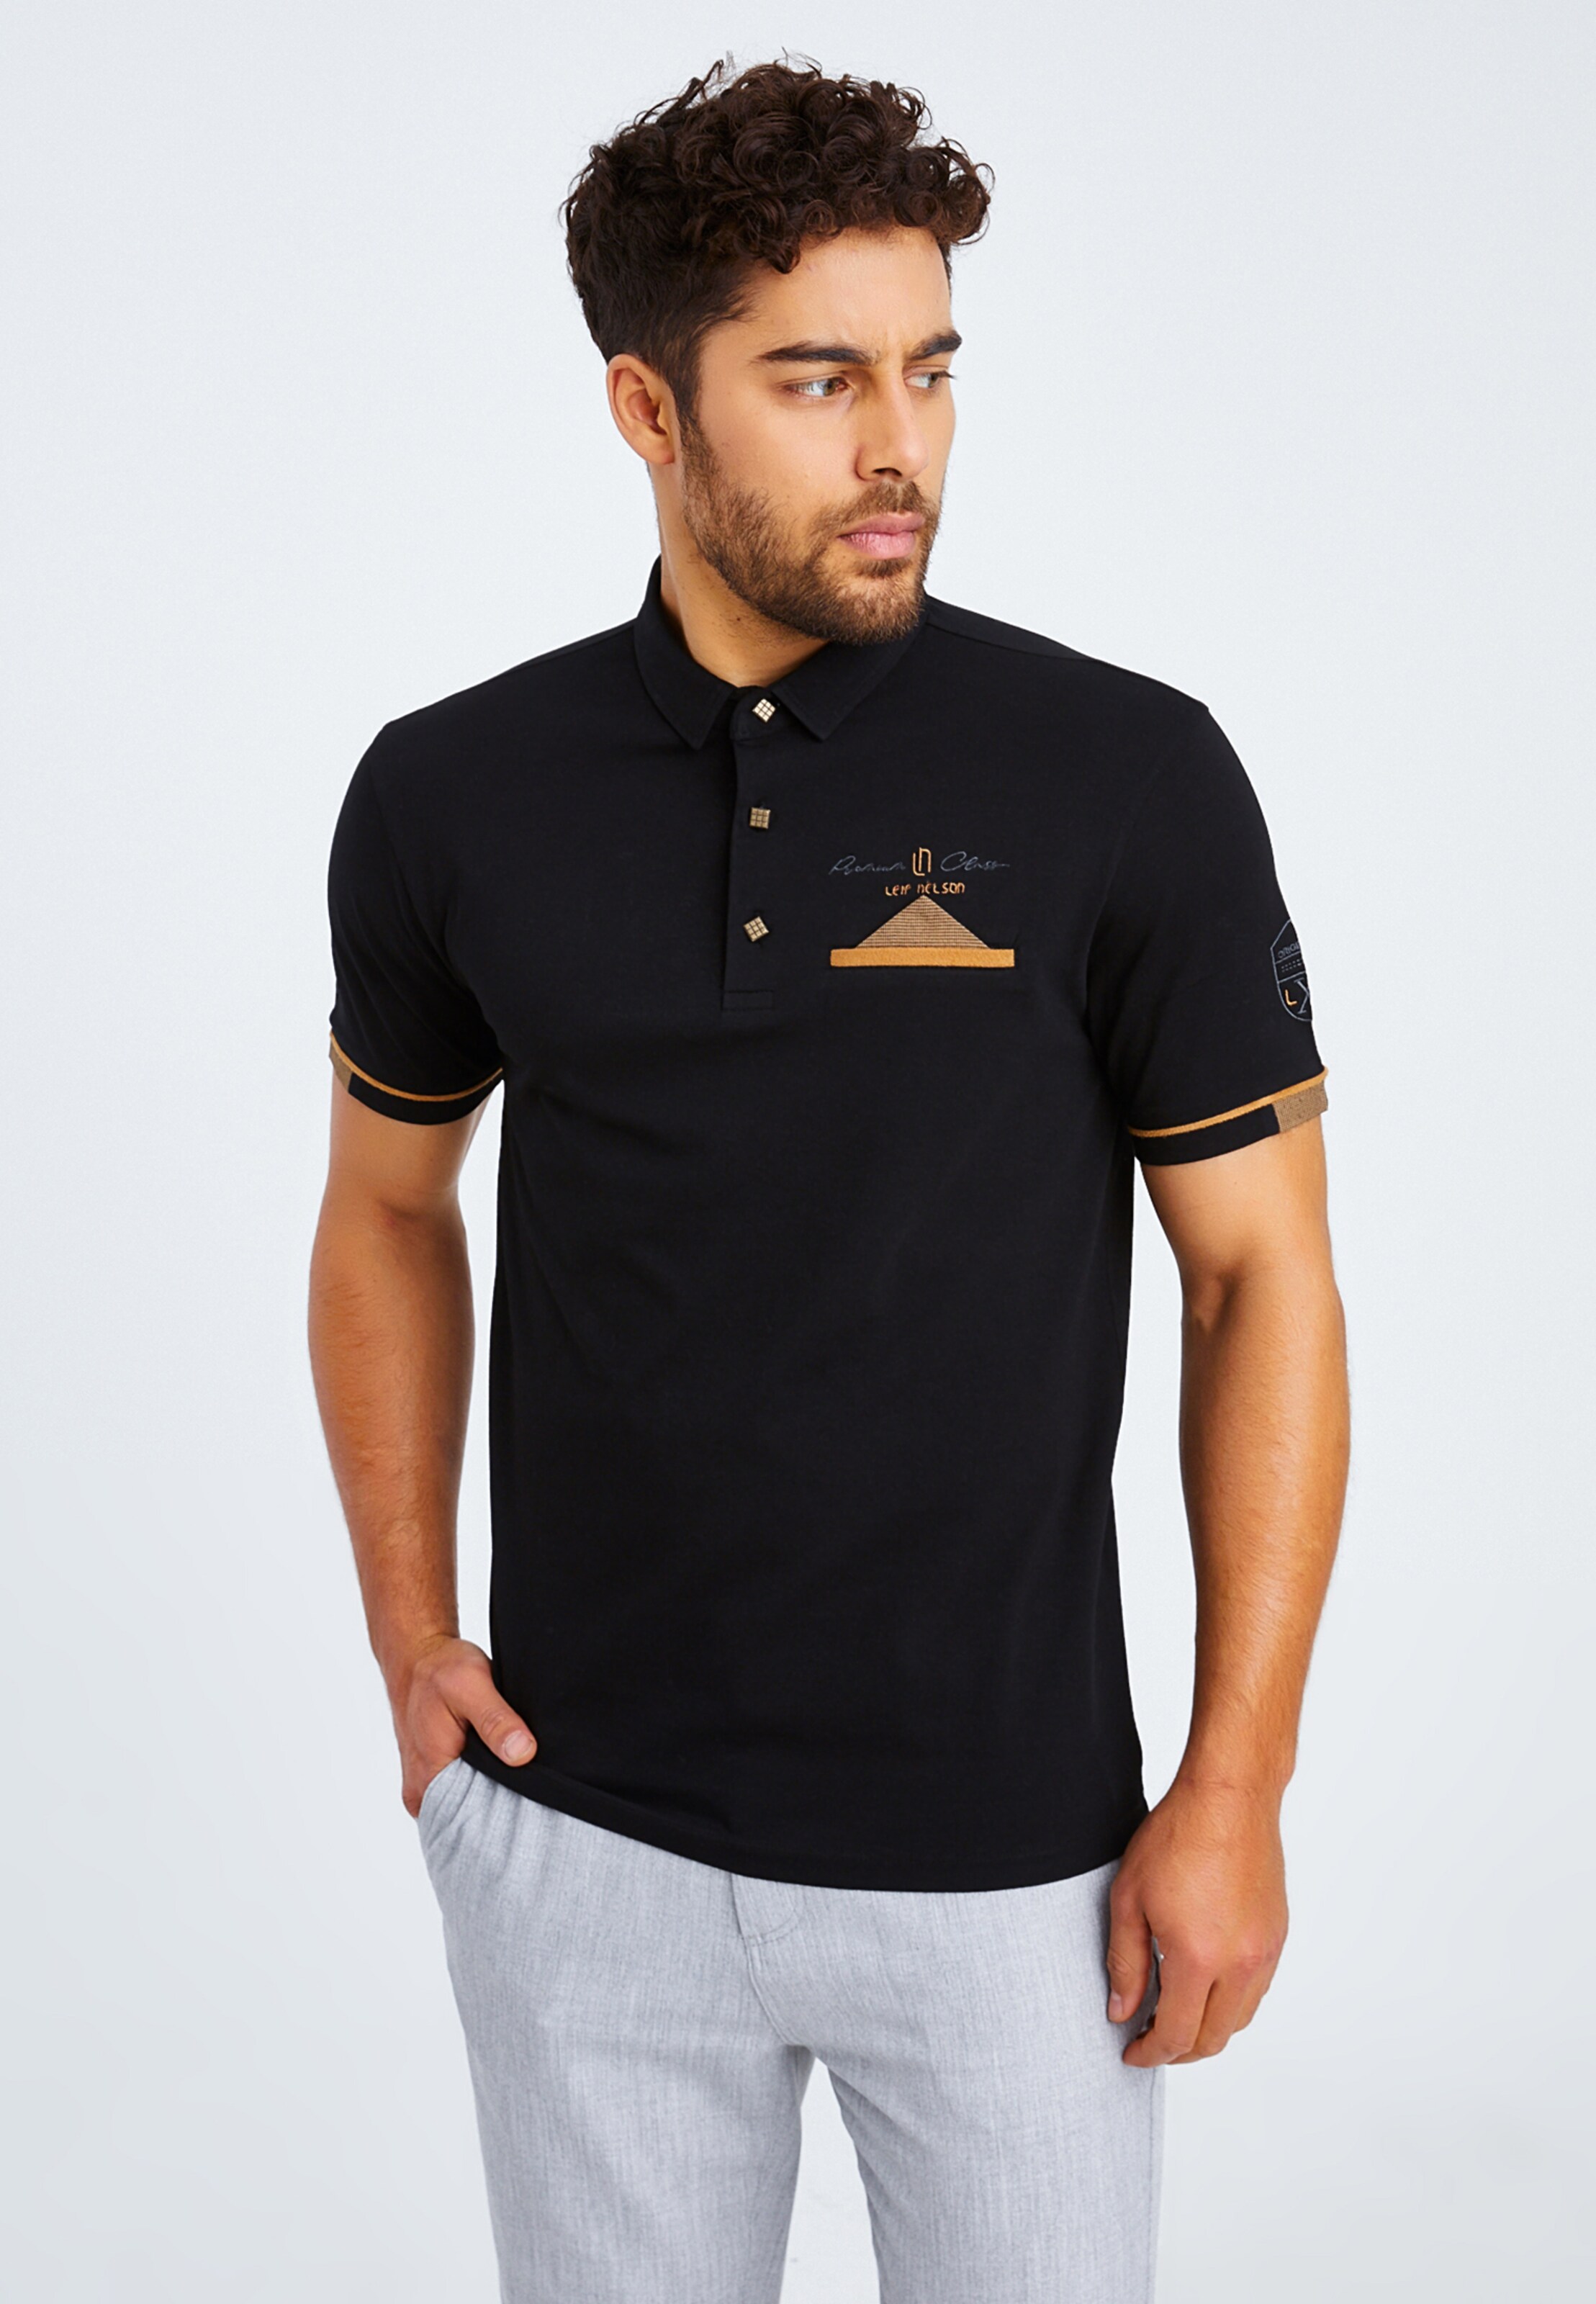 Männer Shirts Leif Nelson Poloshirt in Schwarz - RM22276